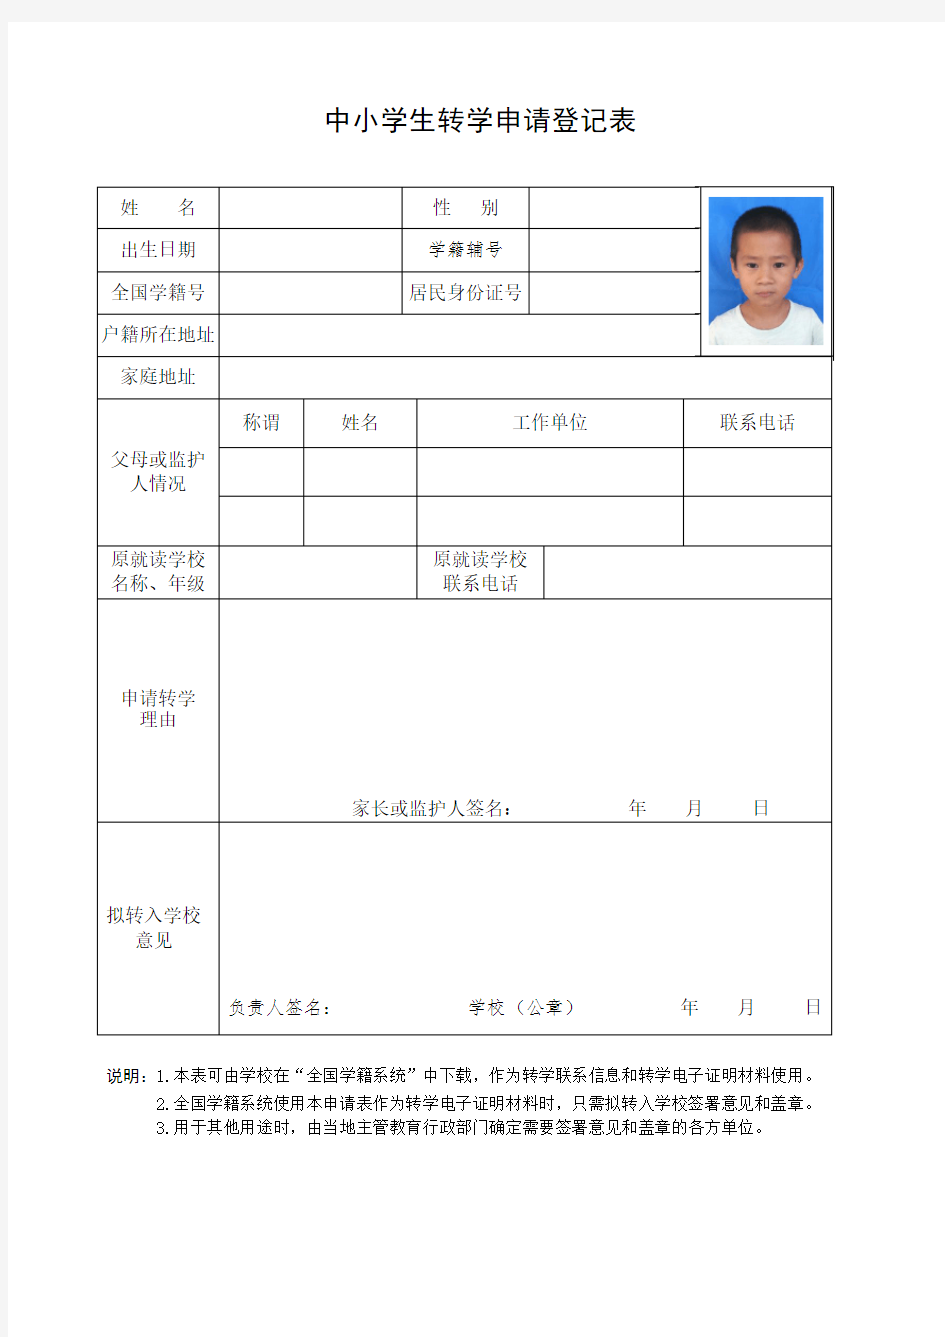 福建省中小学生转学申请登记表